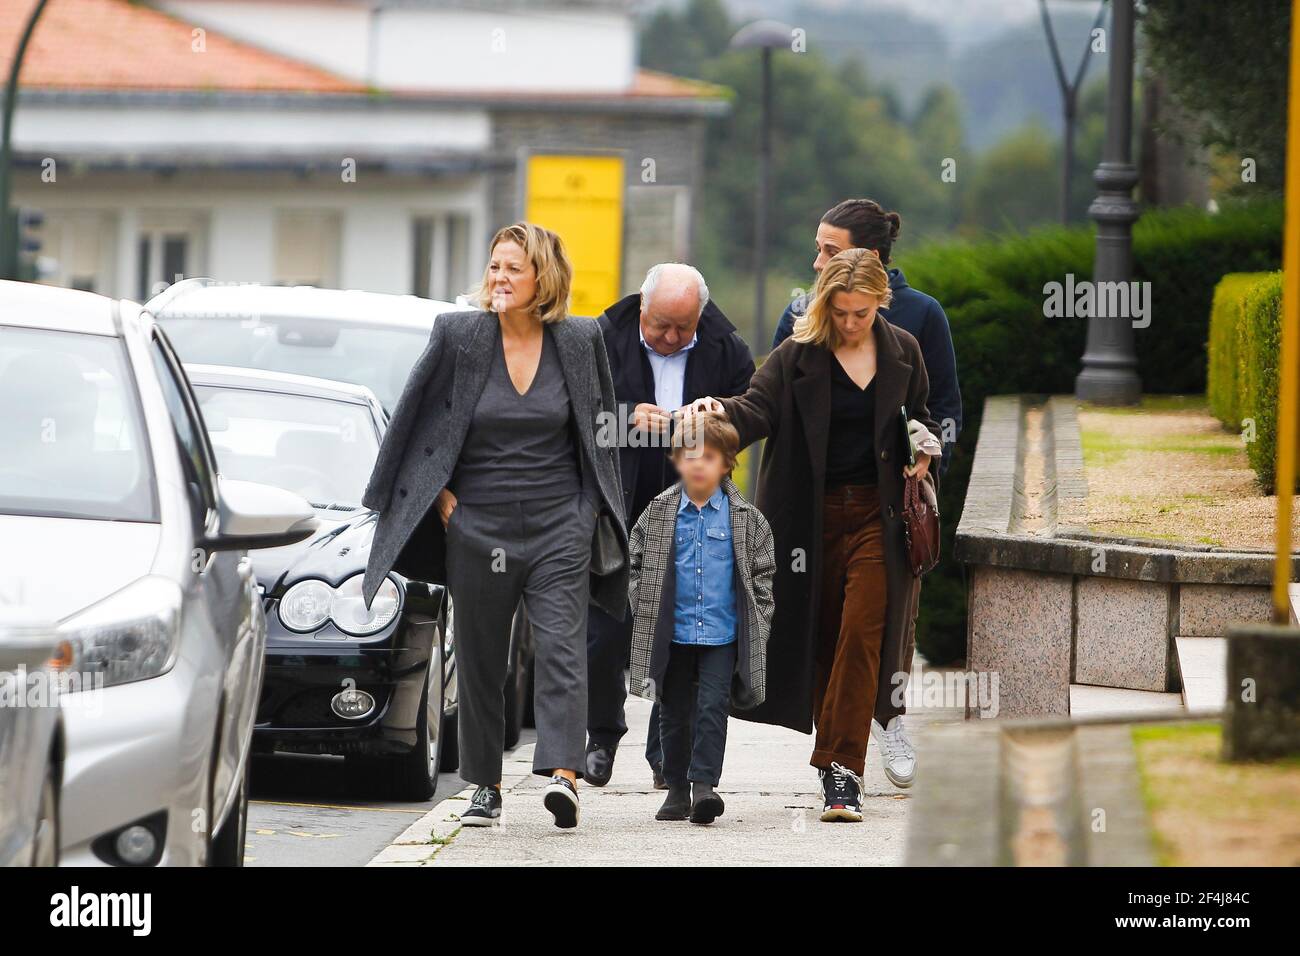 Coruna-Spanien. Amancio Ortega (Gründer von Zara) mit seiner Familie, die  am 11. November 2018 als Familie durch einen Park geht Stockfotografie -  Alamy